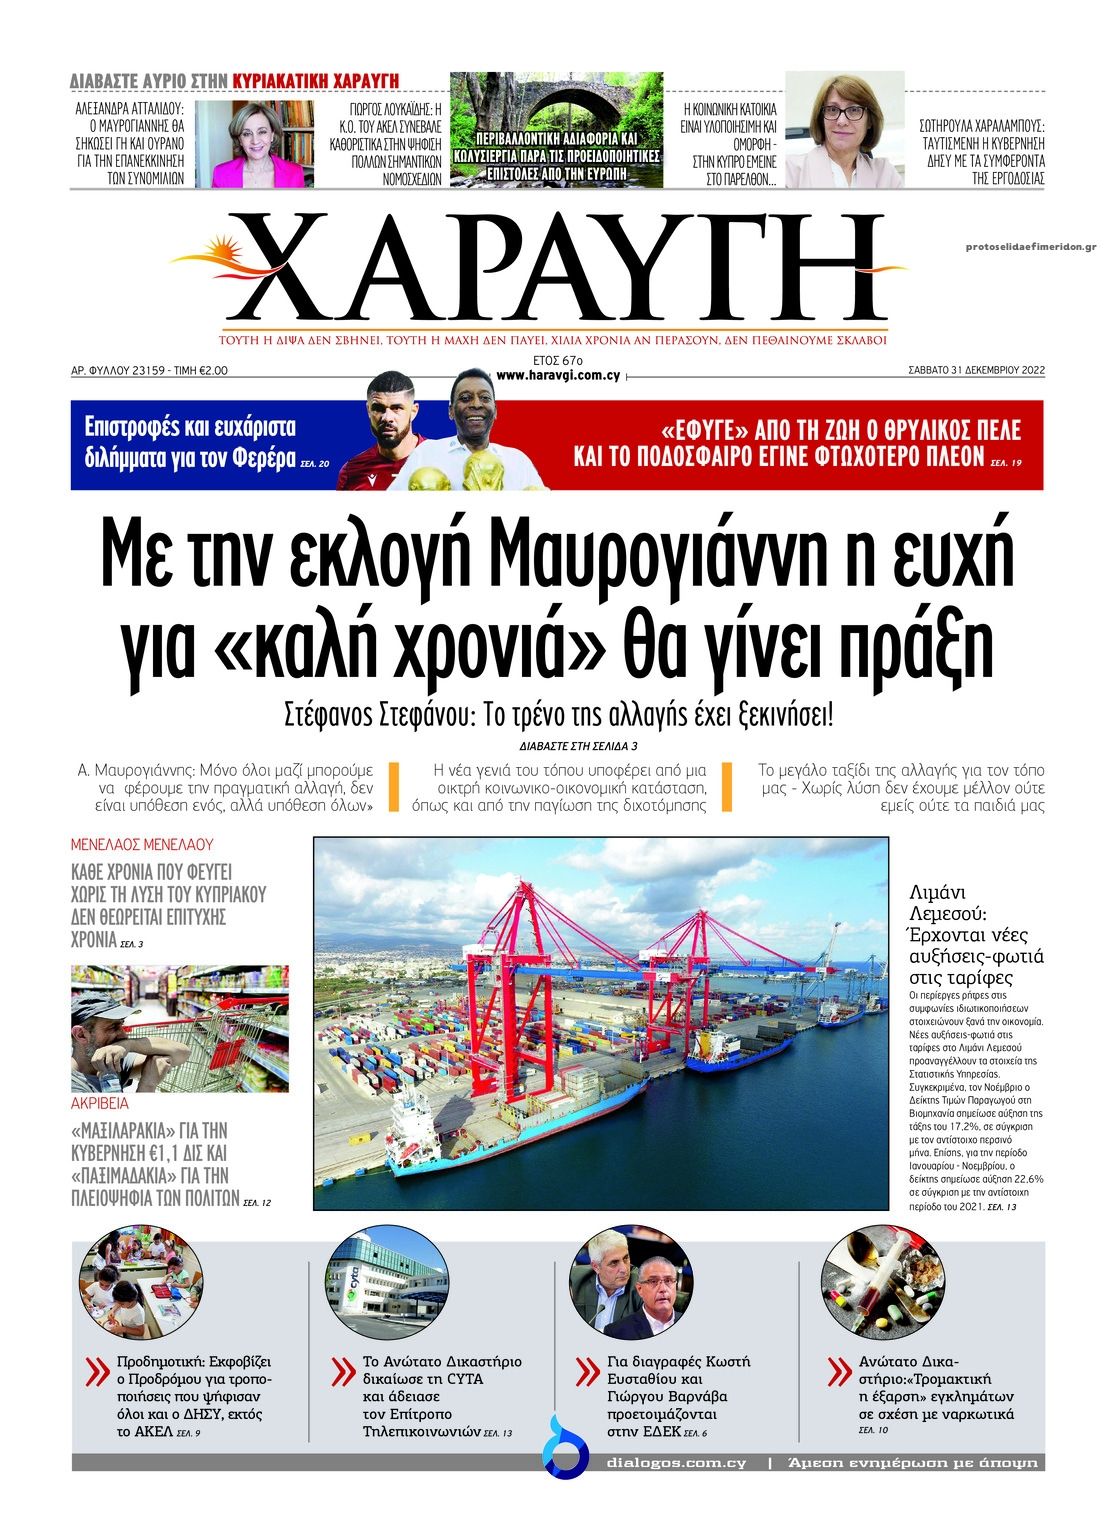 Πρωτοσέλιδο εφημερίδας Χαραυγή Κυπρου